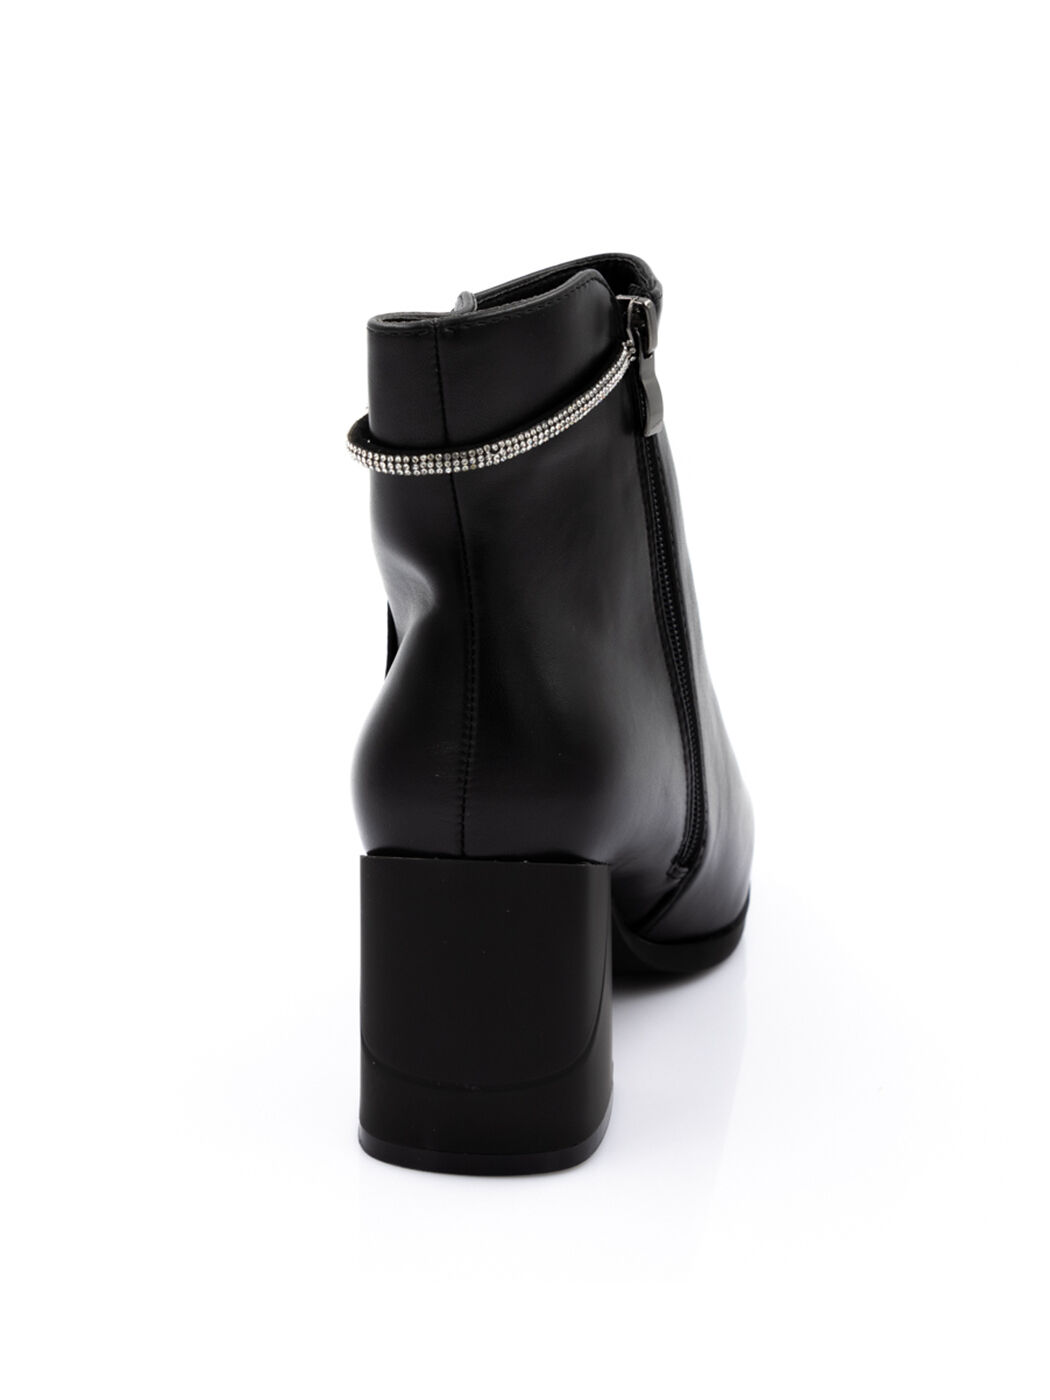 Ботинки женские черные экокожа каблук устойчивый демисезон от производителя AM вид 1